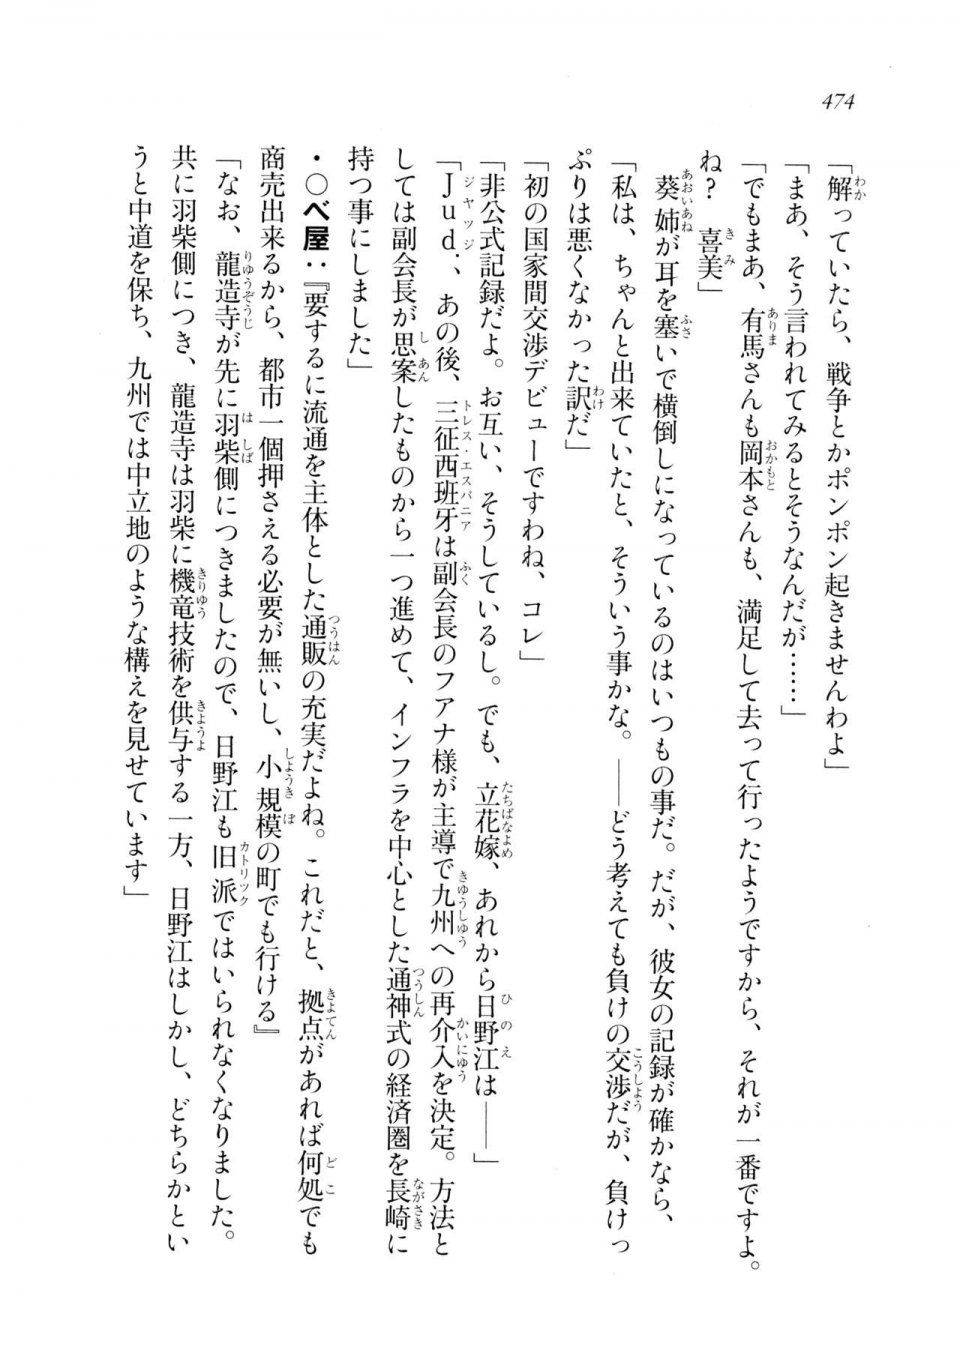 Kyoukai Senjou no Horizon LN Sidestory Vol 2 - Photo #472